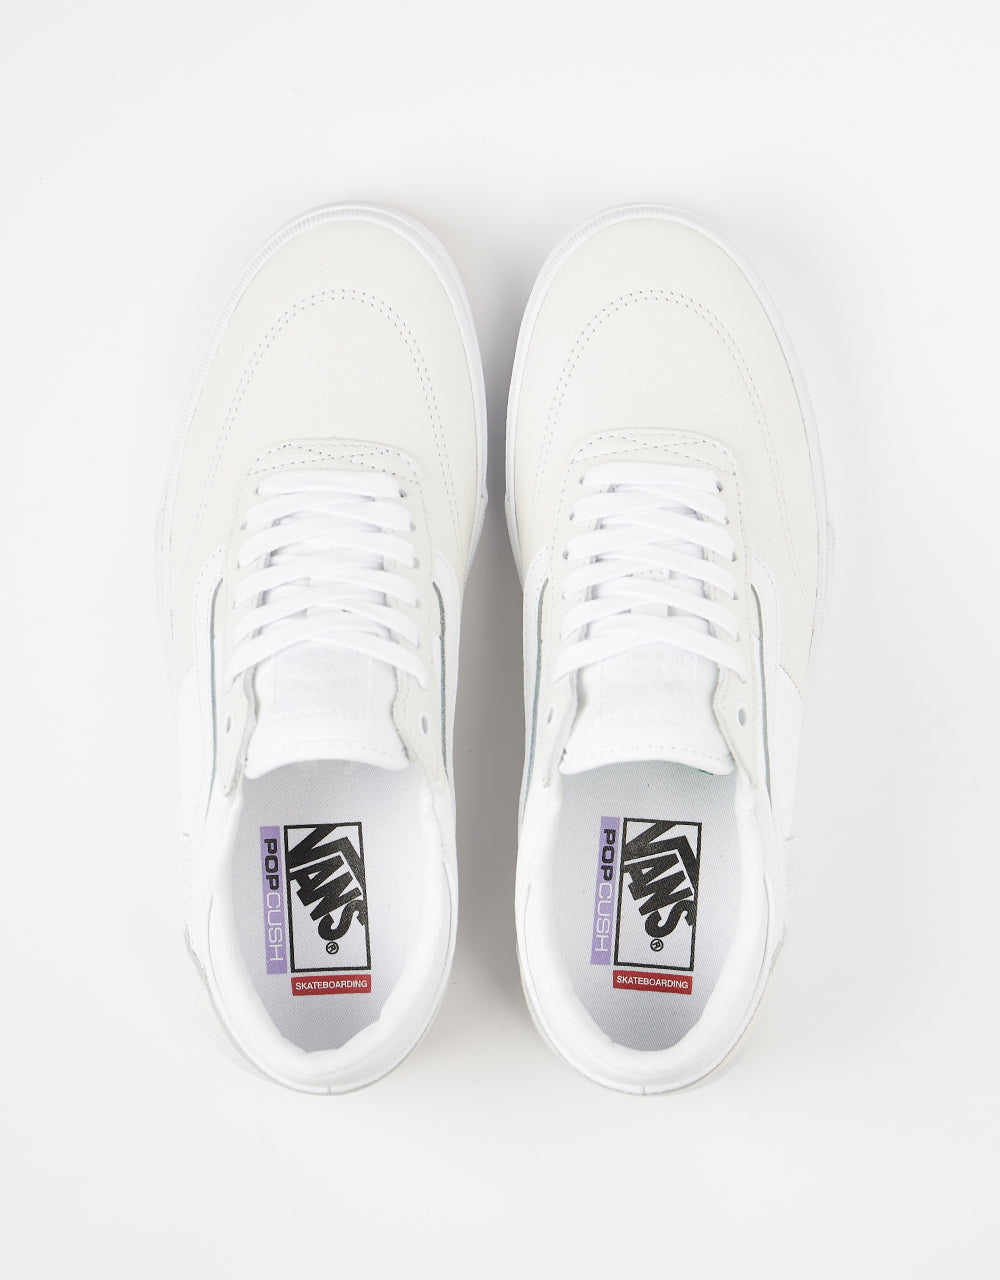 Vans Gilbert Crockett Skate Shoes - White/White